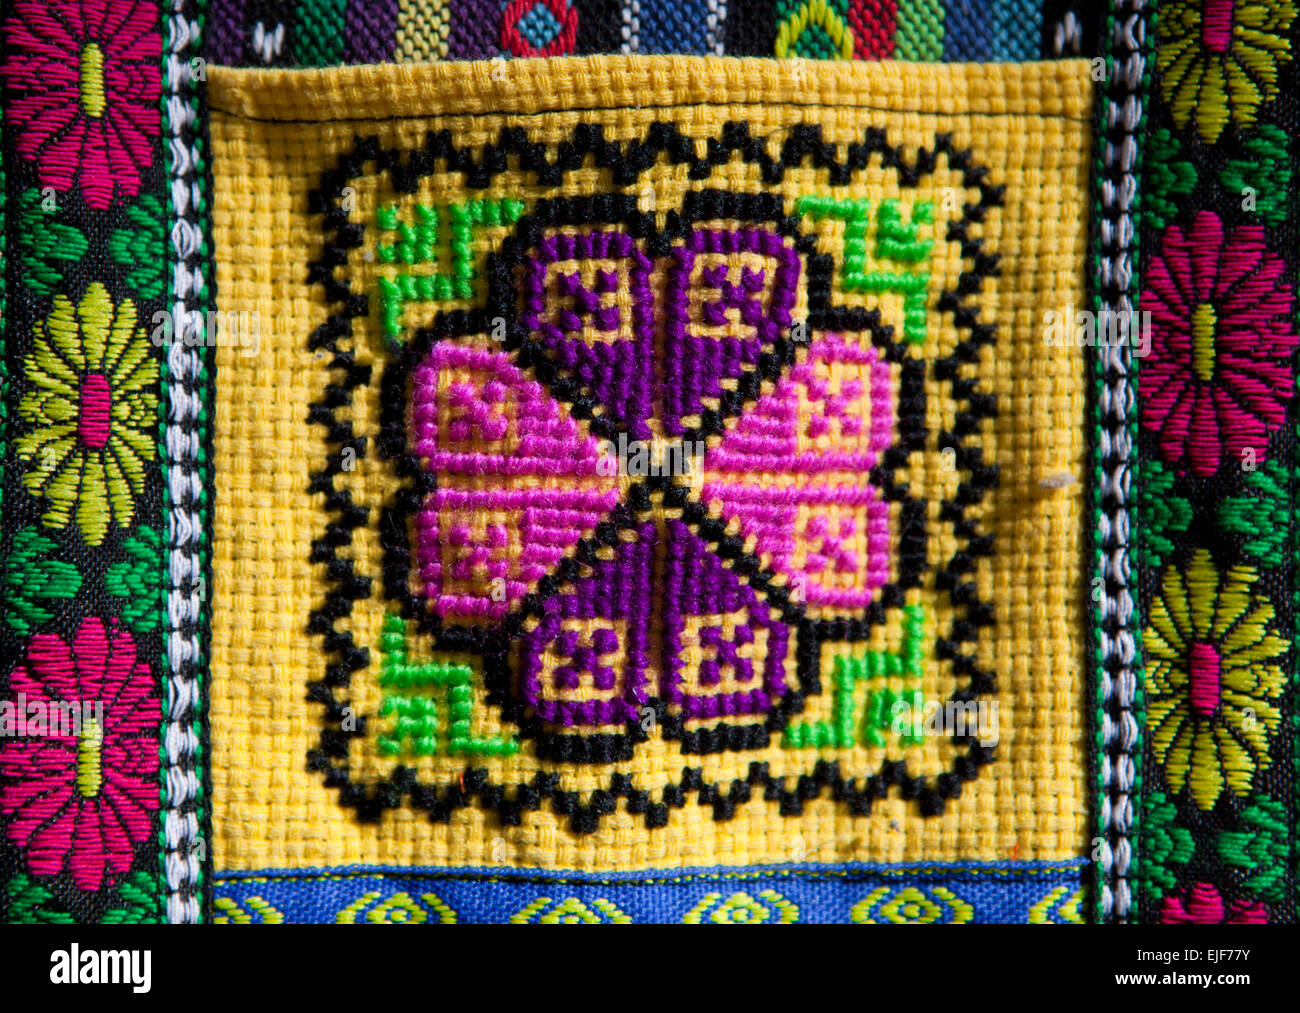 Les modèles colorés sur les tissus de l'artisanat andin Banque D'Images